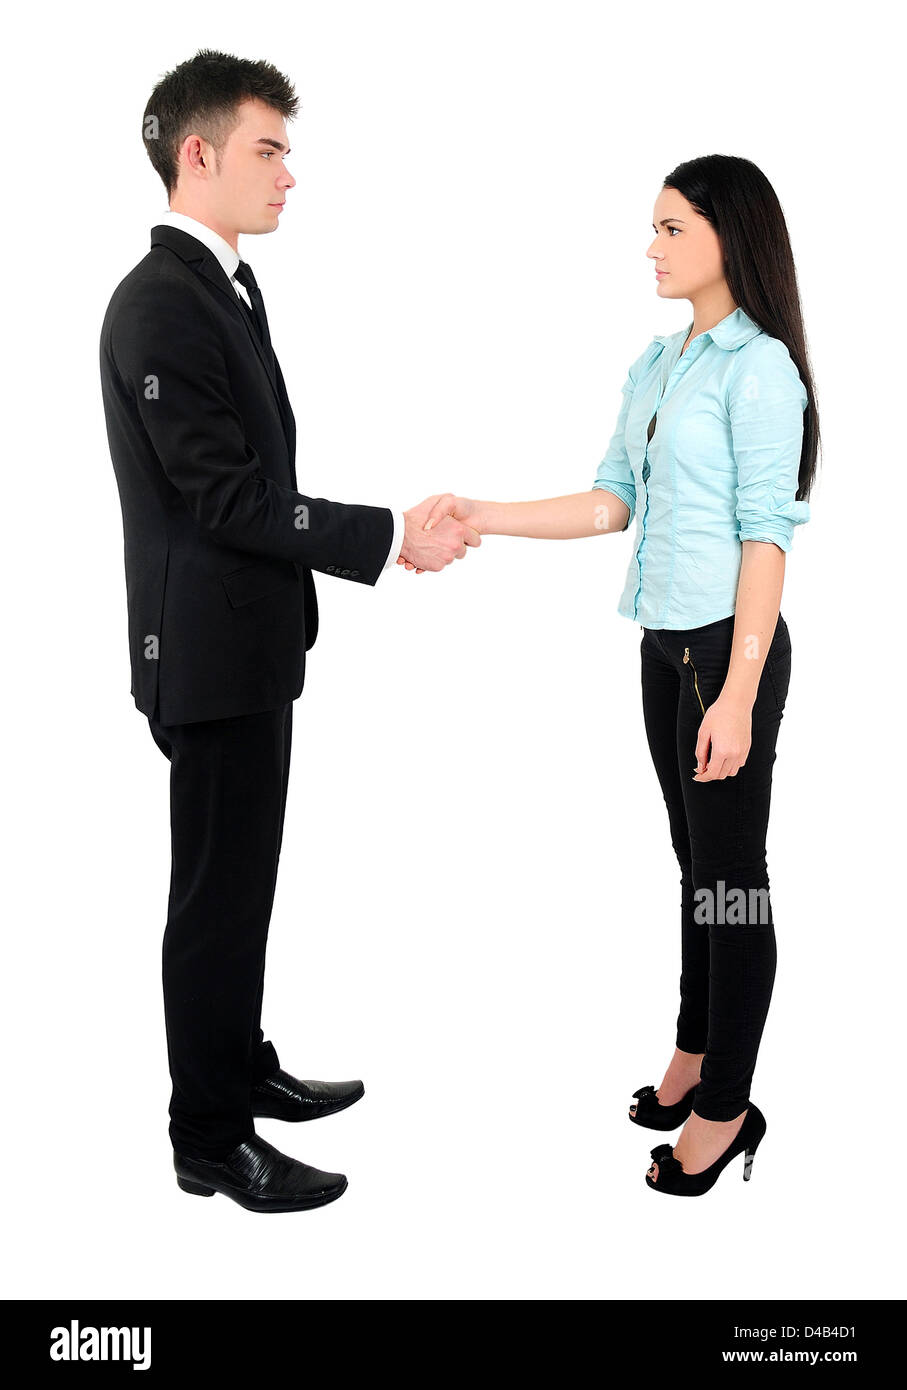 Isolated young business couple handshake Stock Photo